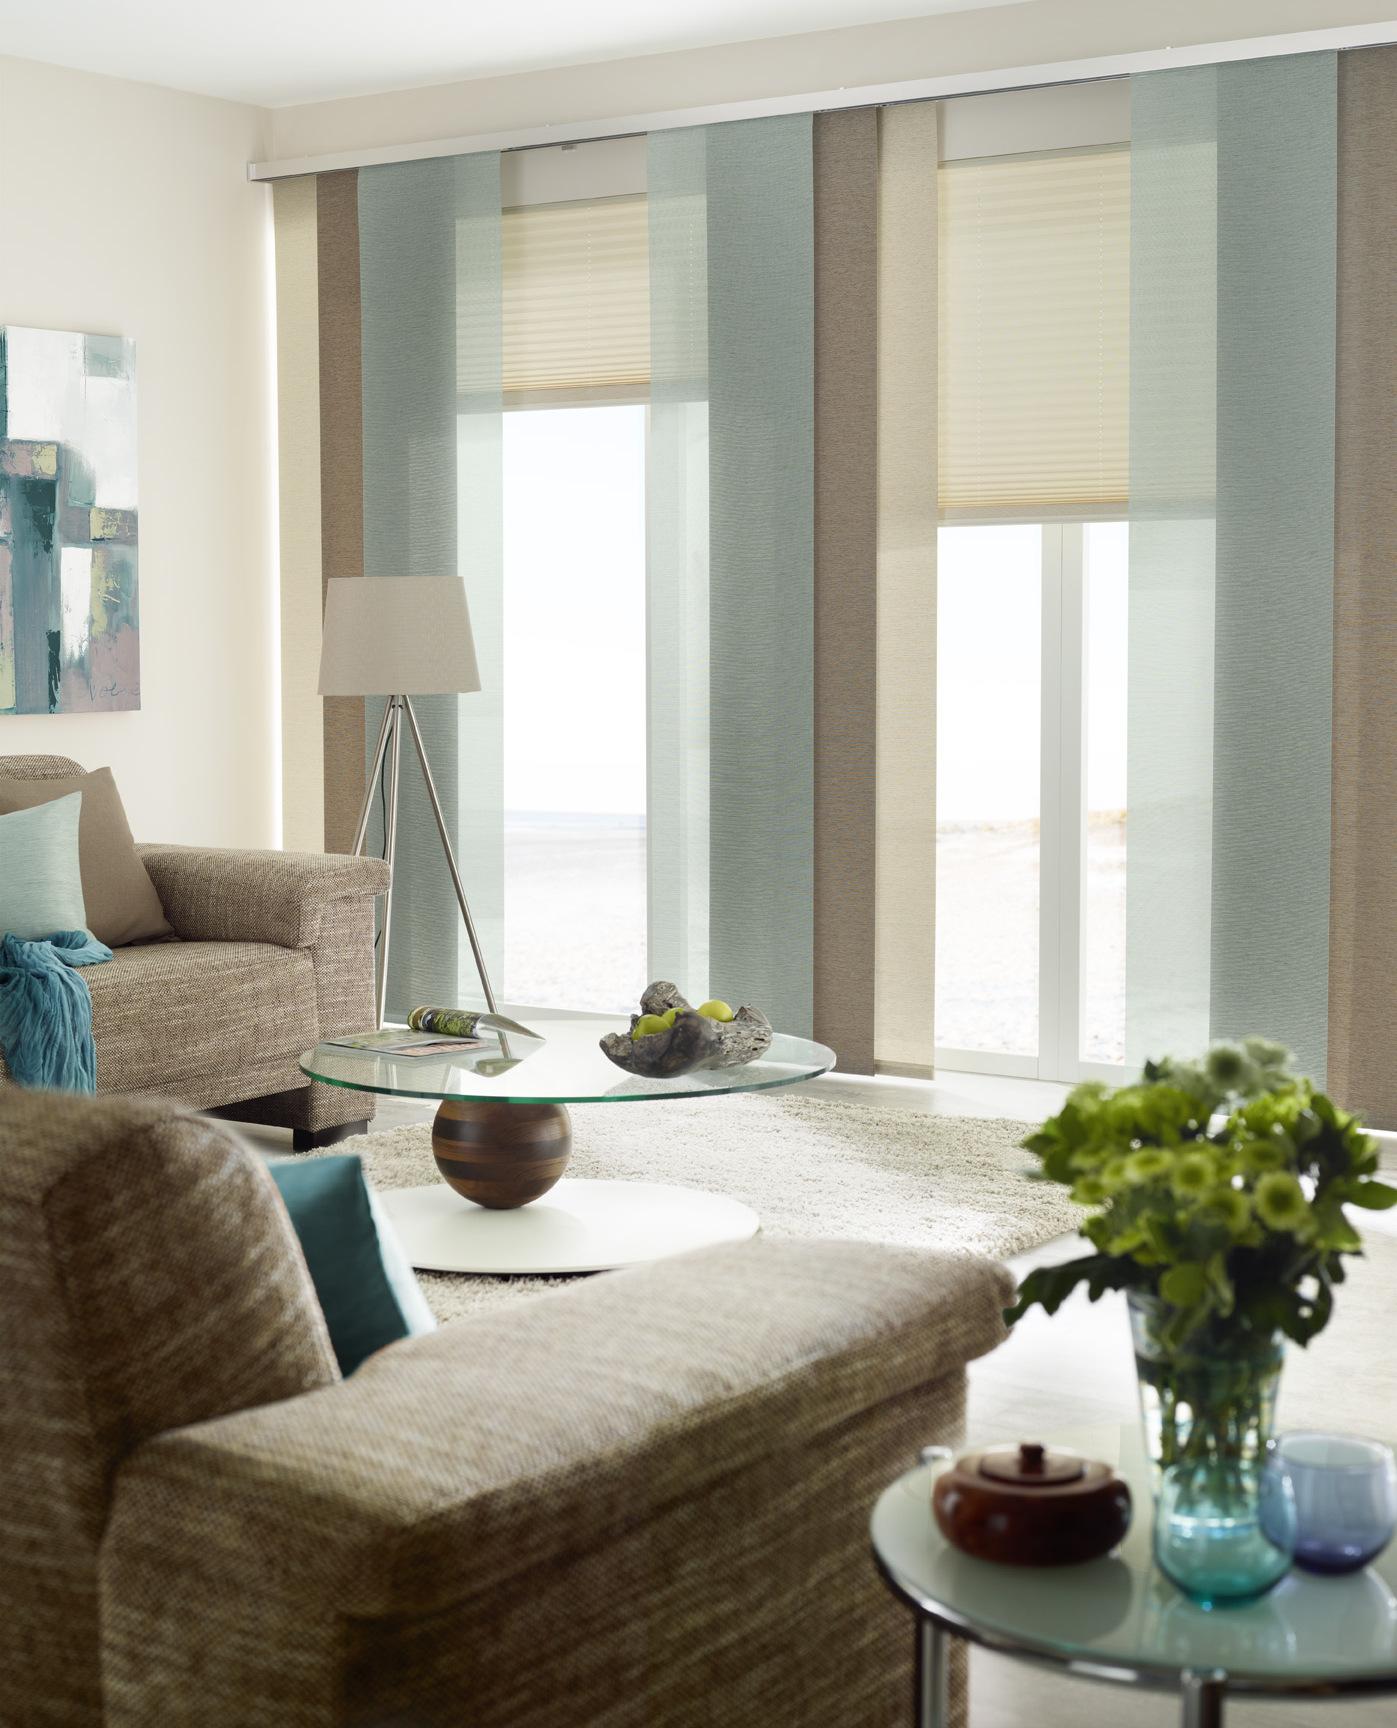 Gemütliches Wohnzimmer in Erdtönen kombiniert mit Eisblau #wohnzimmer #gardine #dekostoff ©UNLAND International GmbH